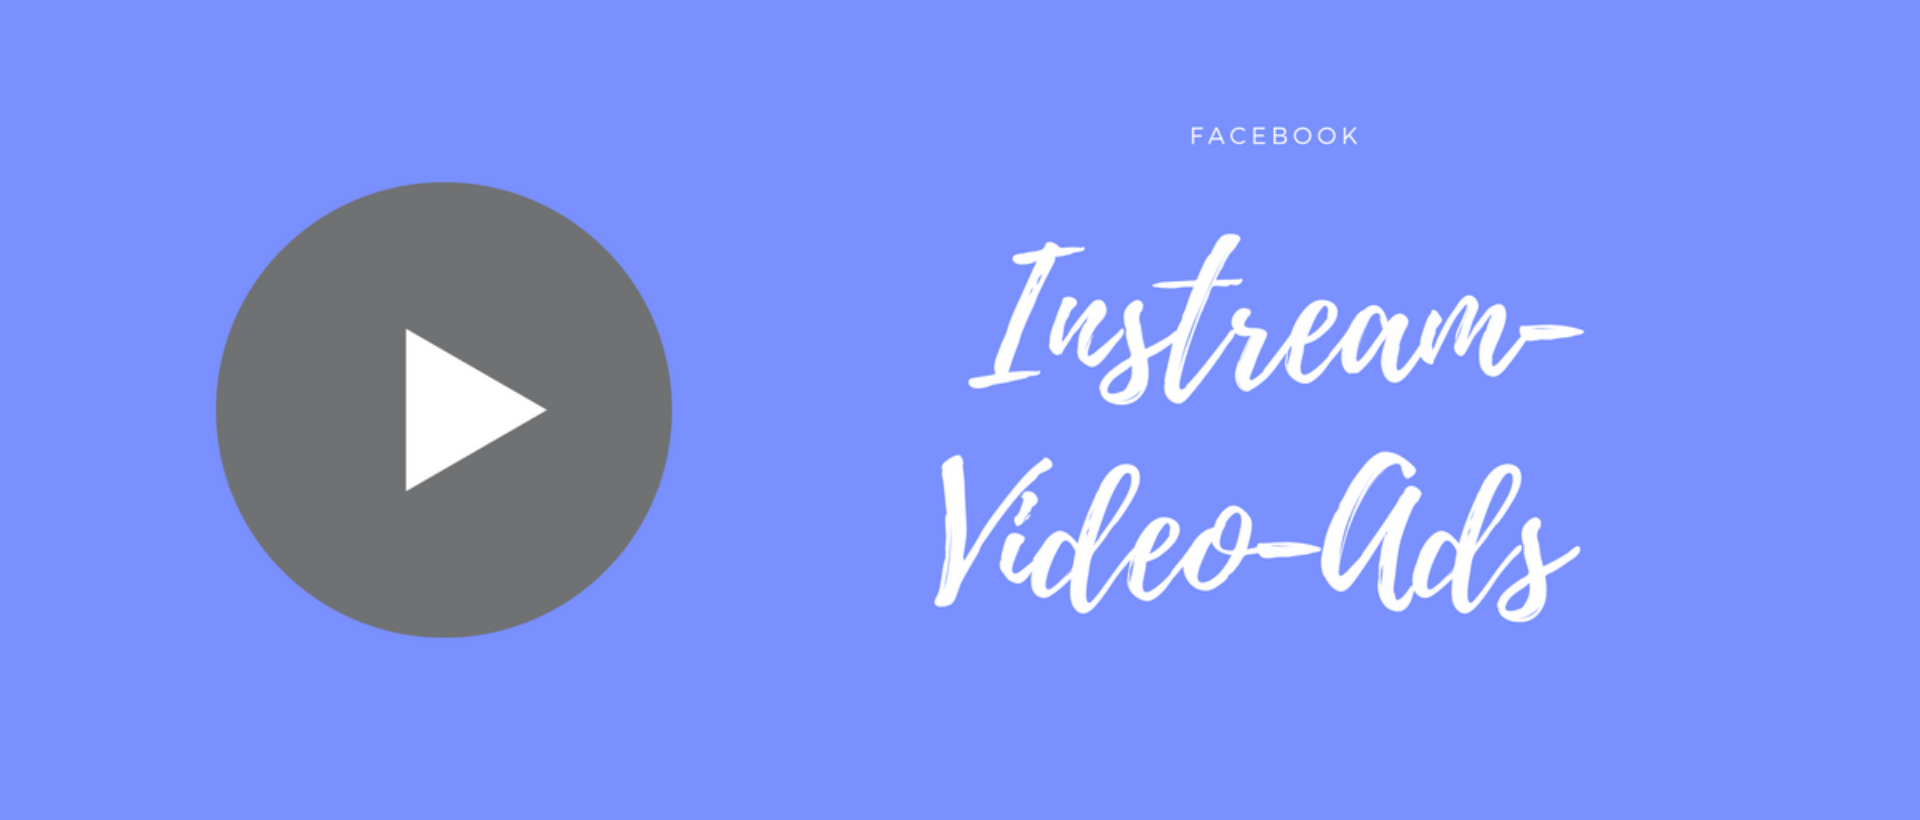 Instream-Video-Ads auf Facebook